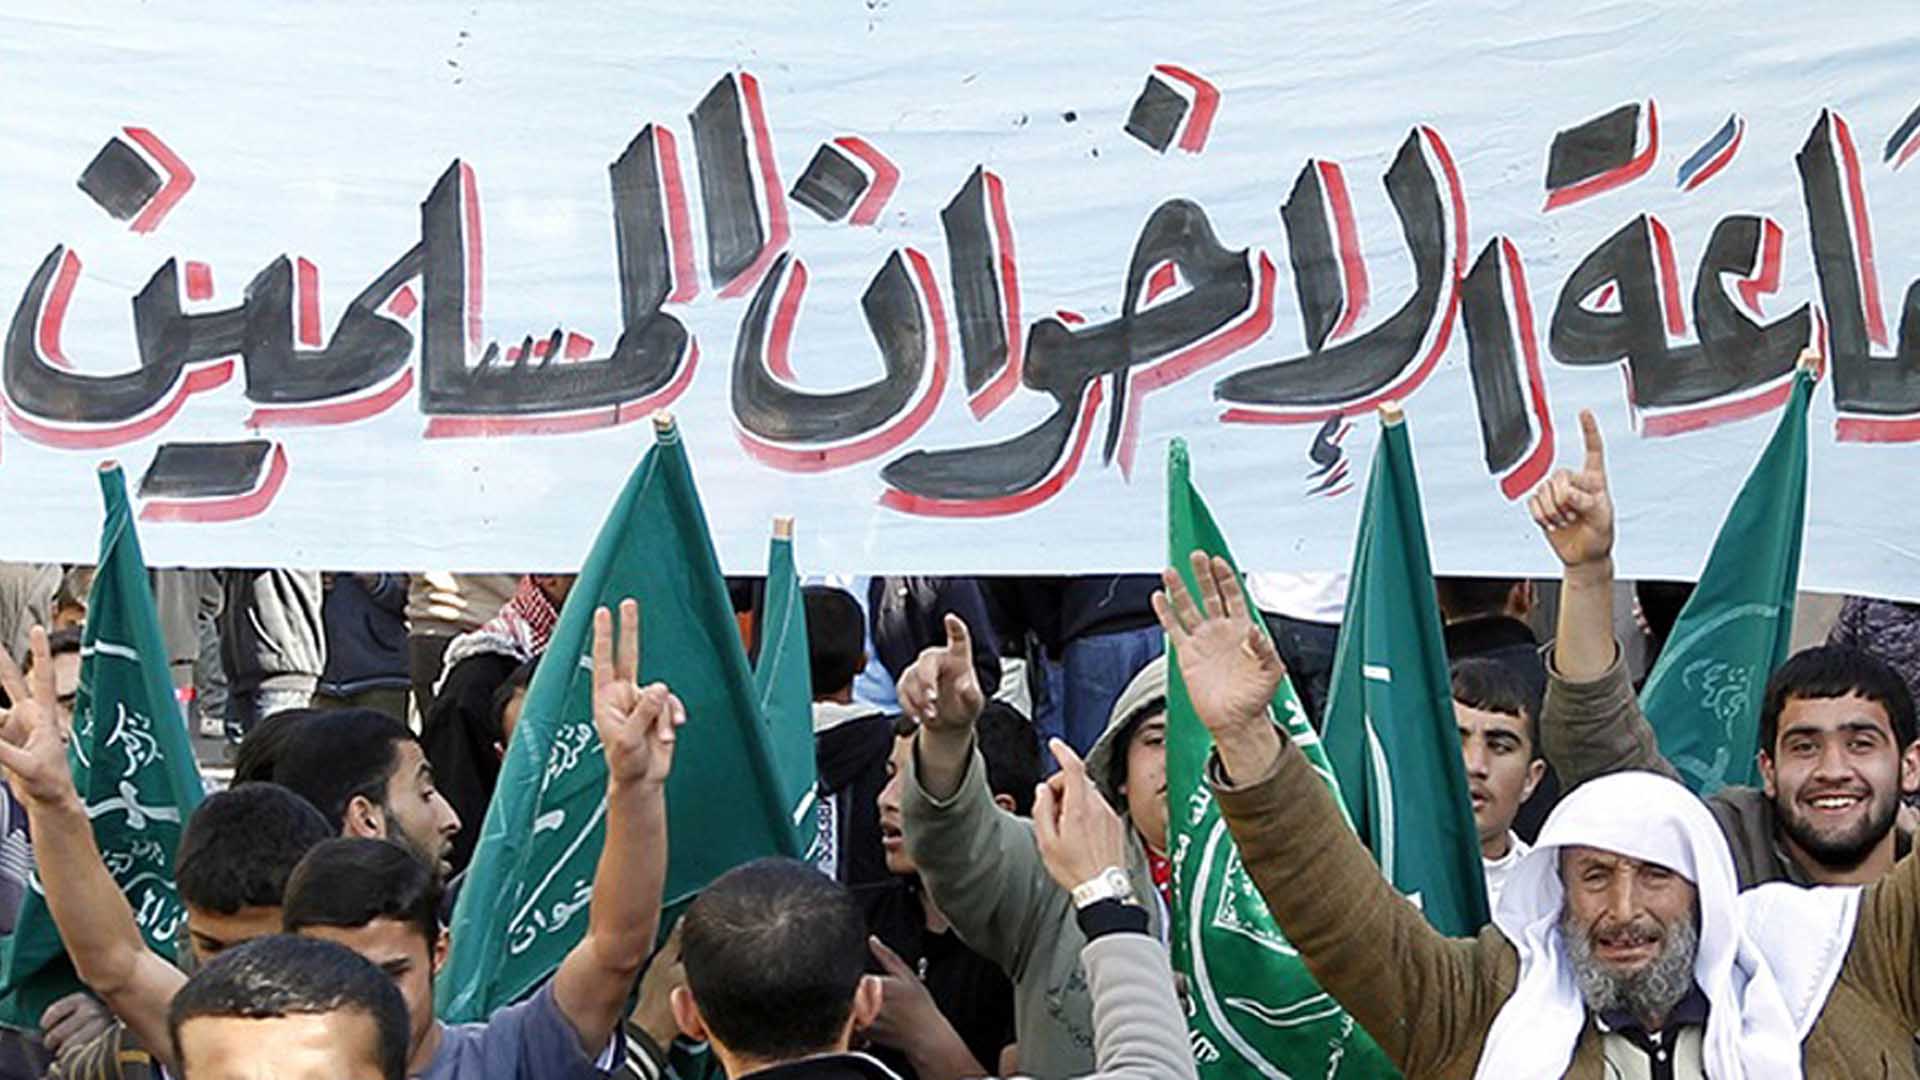 عريب الرنتاوي يكتب: عن "الذاتي" و"الموضوعي" في انهيارات "الإخوان"